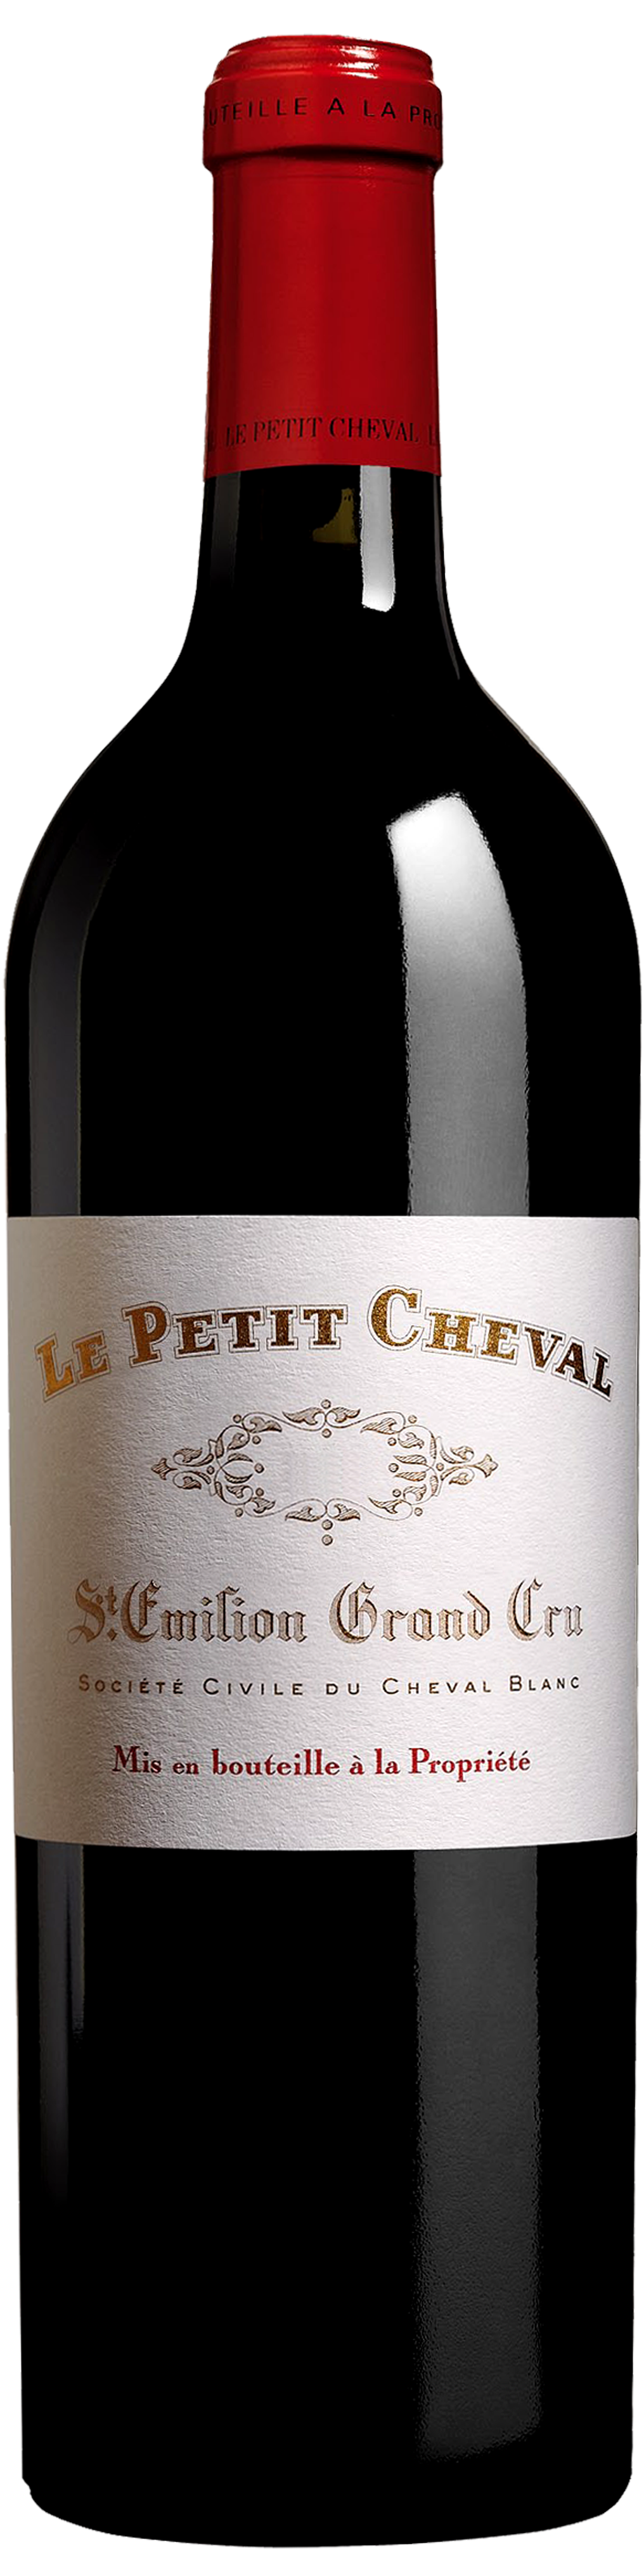 Bottle shot of 1998 Petit Cheval, St Emilion